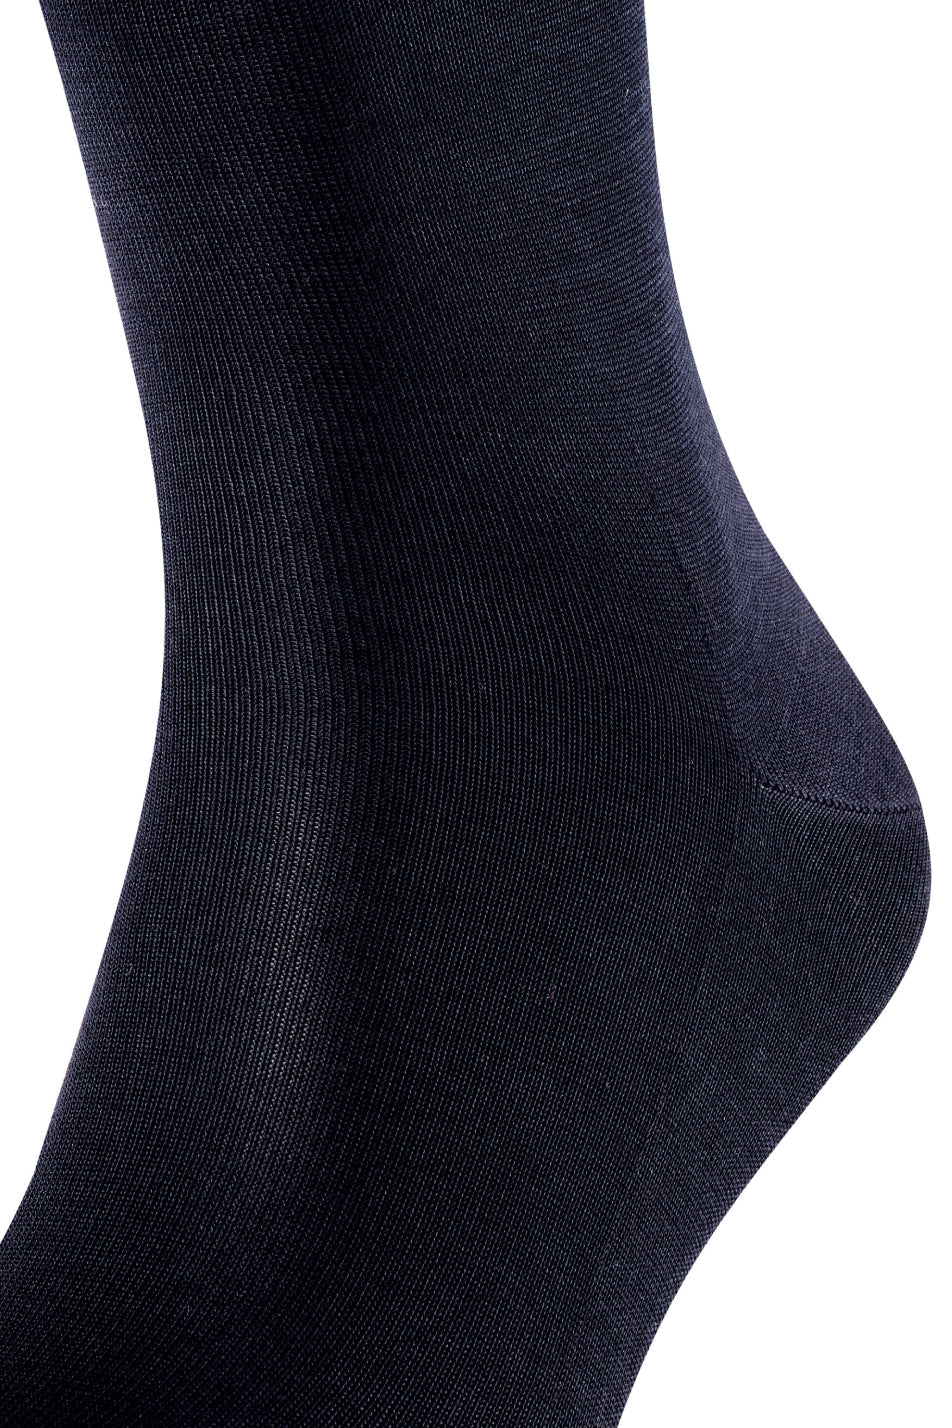 Falke Tiago Men's Sock